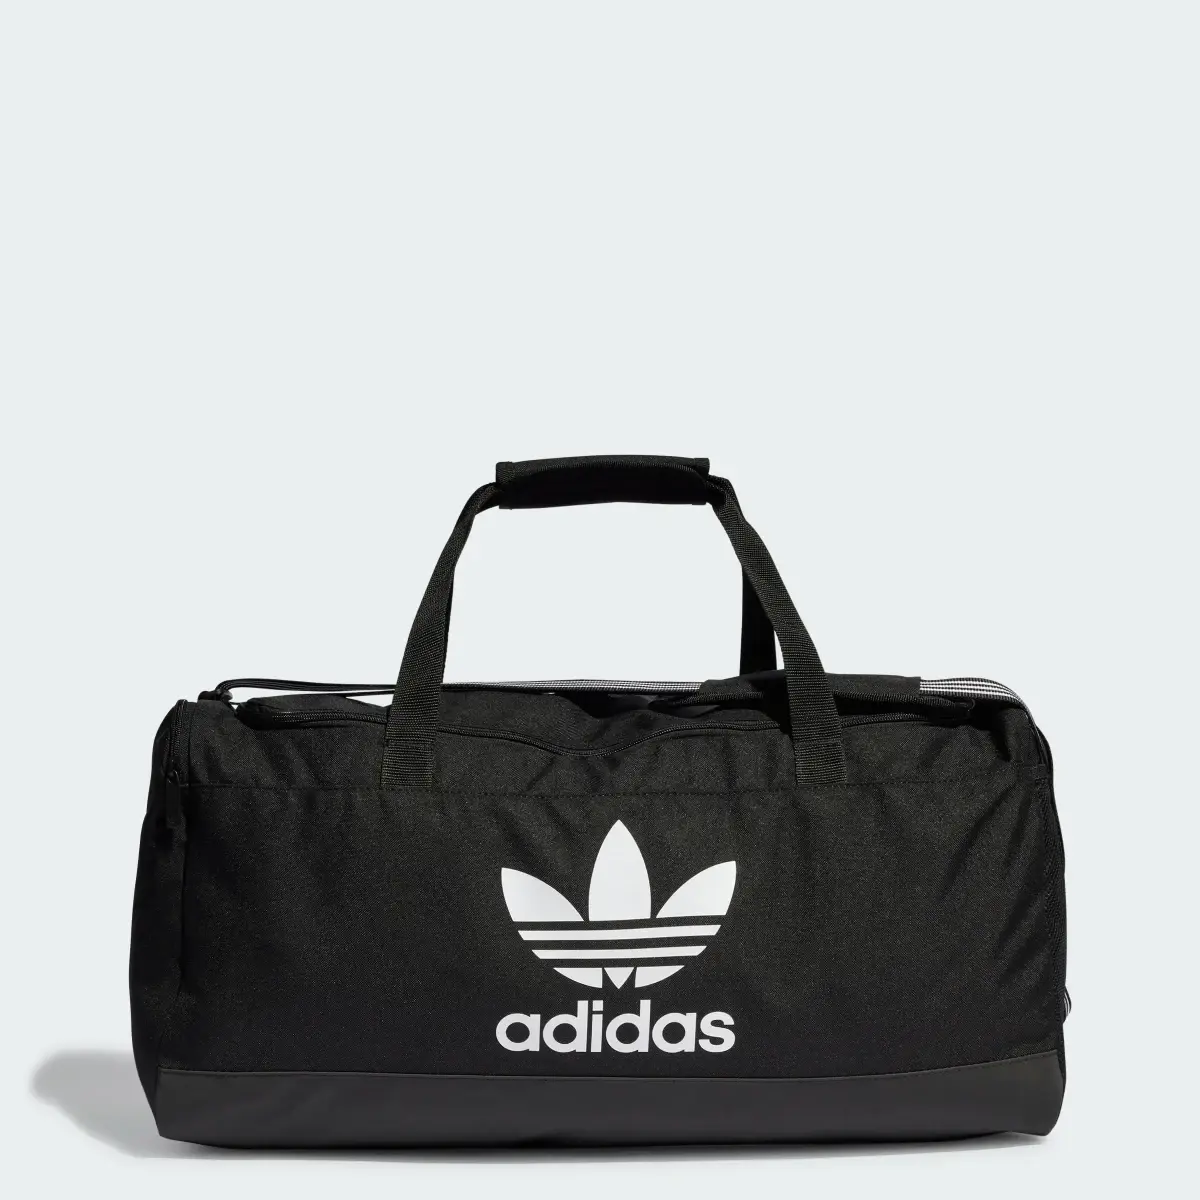 Adidas Duffel Bag. 1